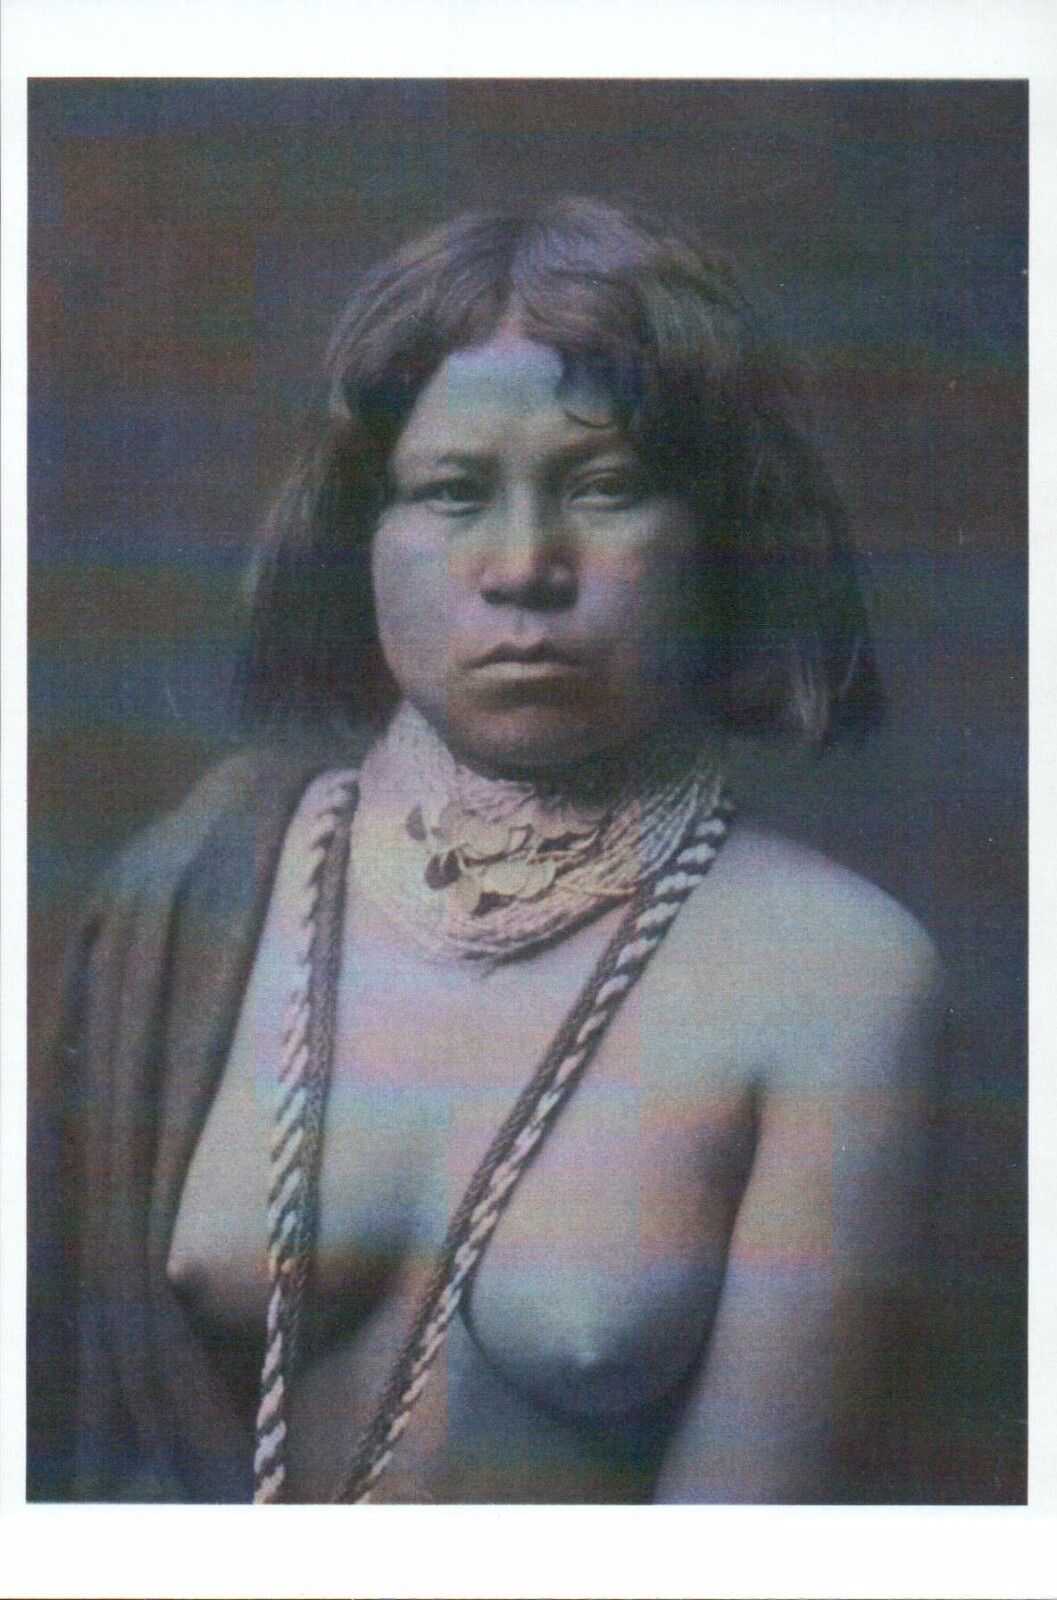 alva harris add american indian woman nude photo